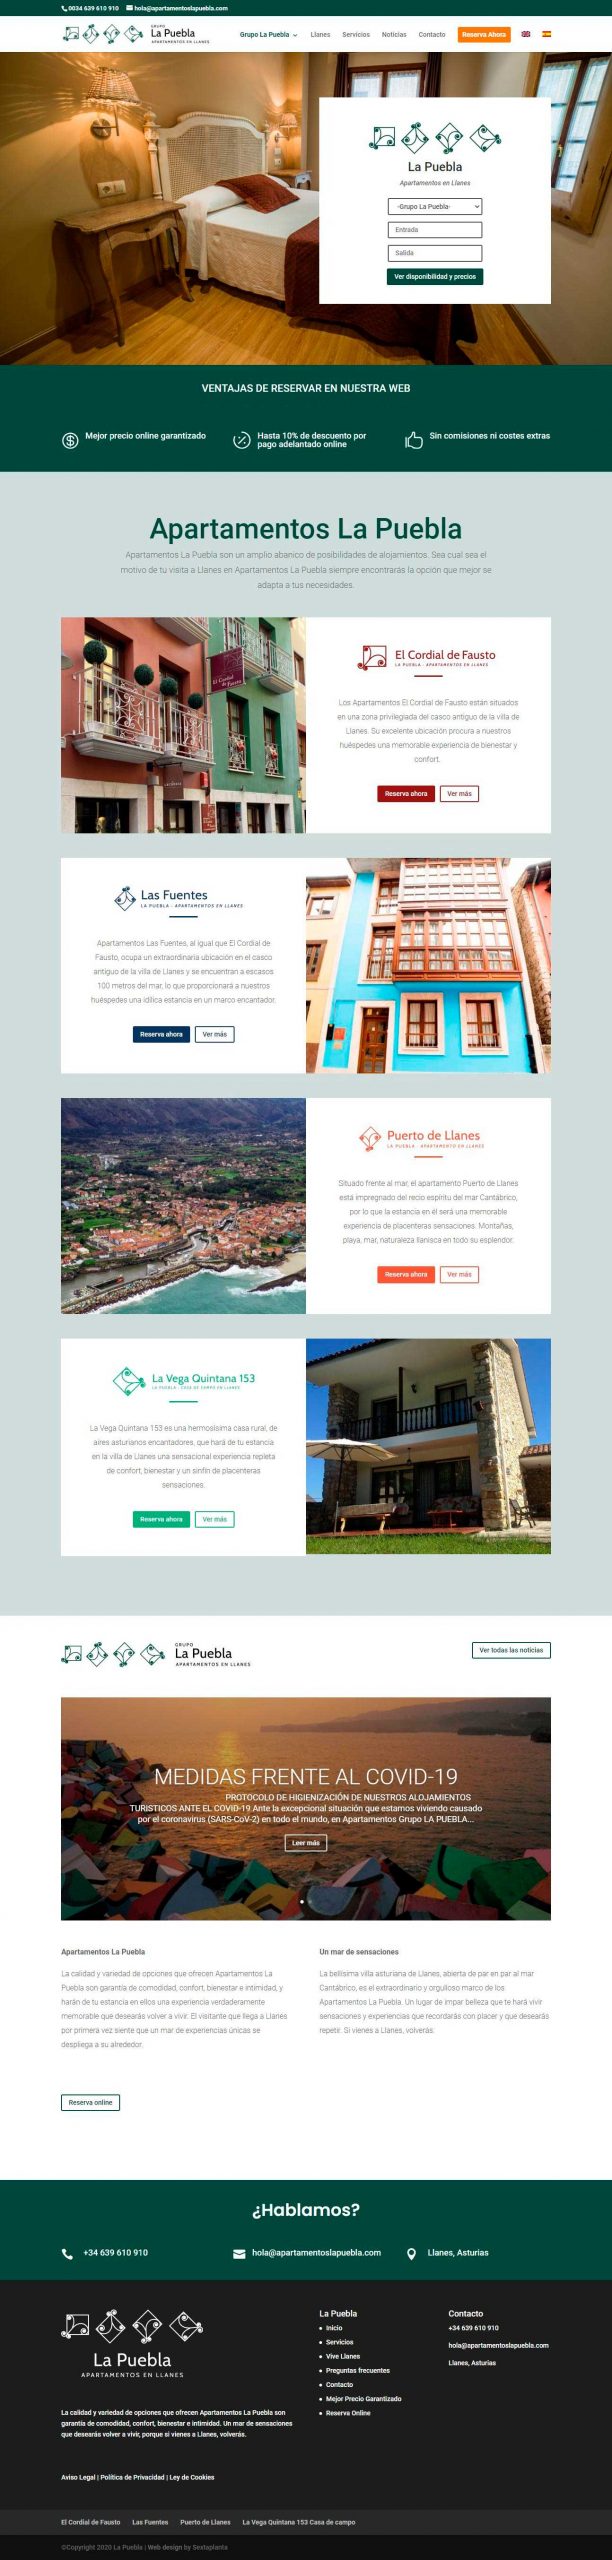 Diseño Web Apartamentos turísticos Sitito